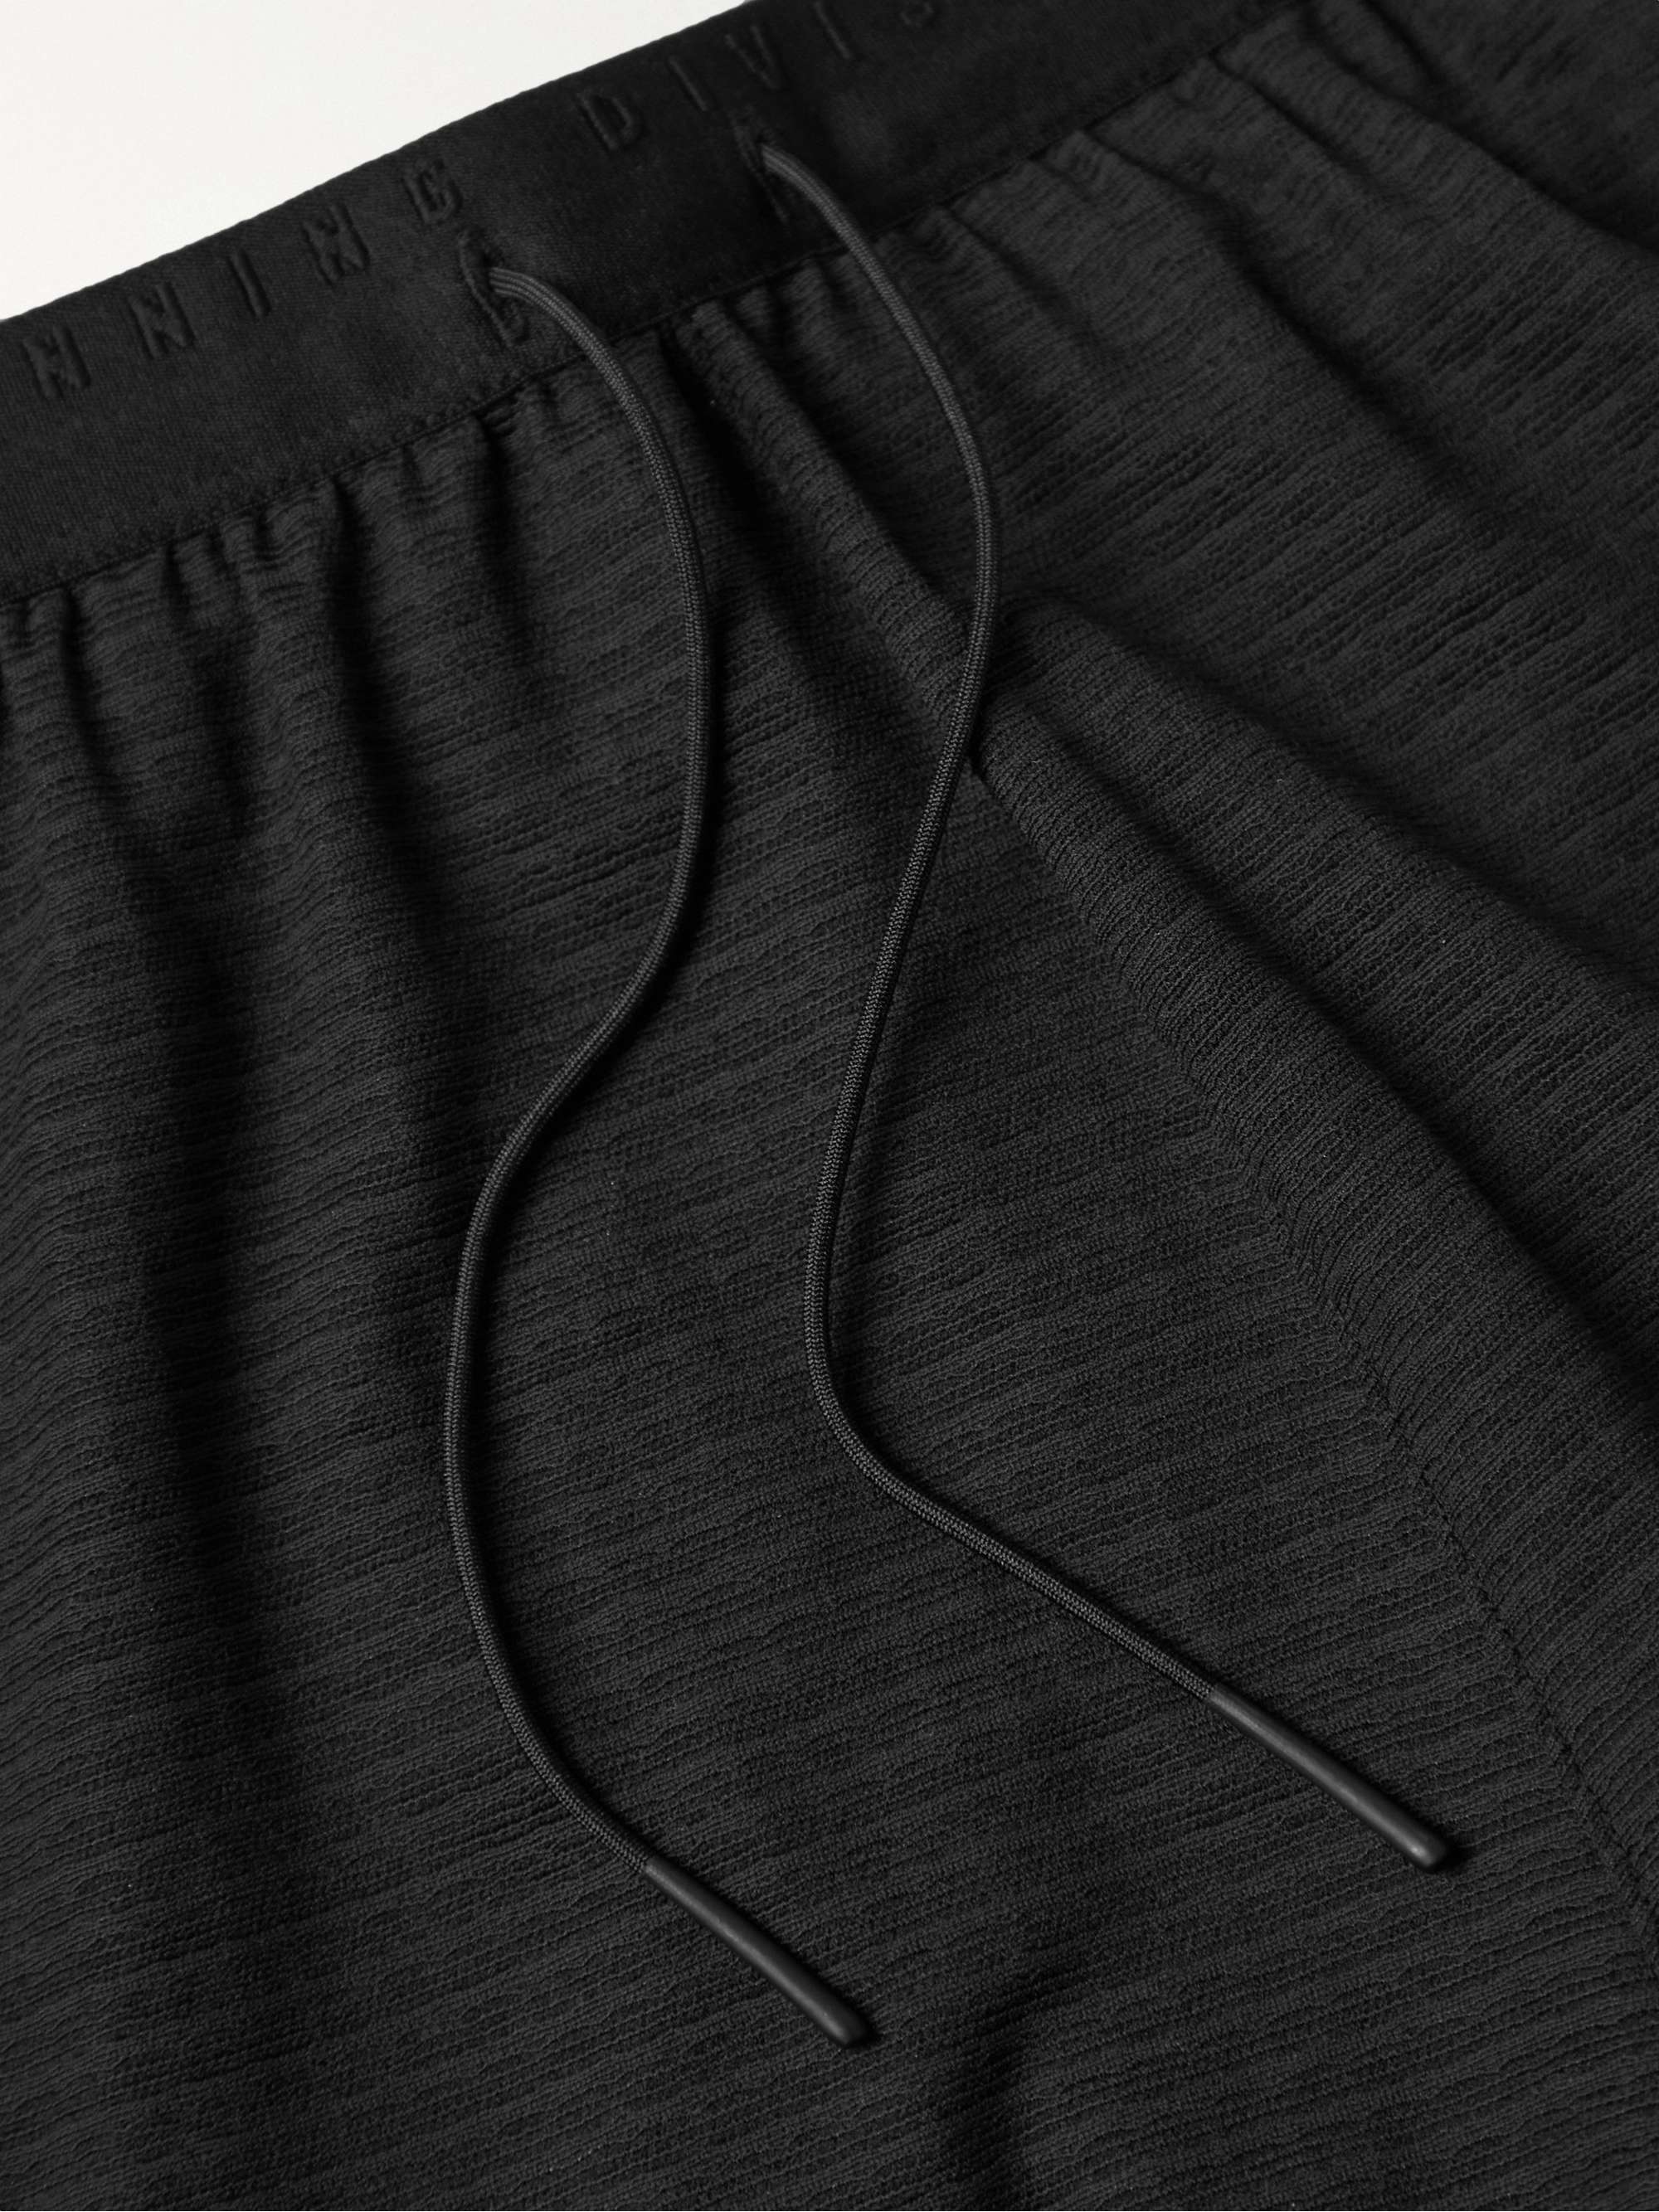 NIKE RUNNING Pinnacle Run Division Slim-Fit Perforated Dri-FIT Shorts